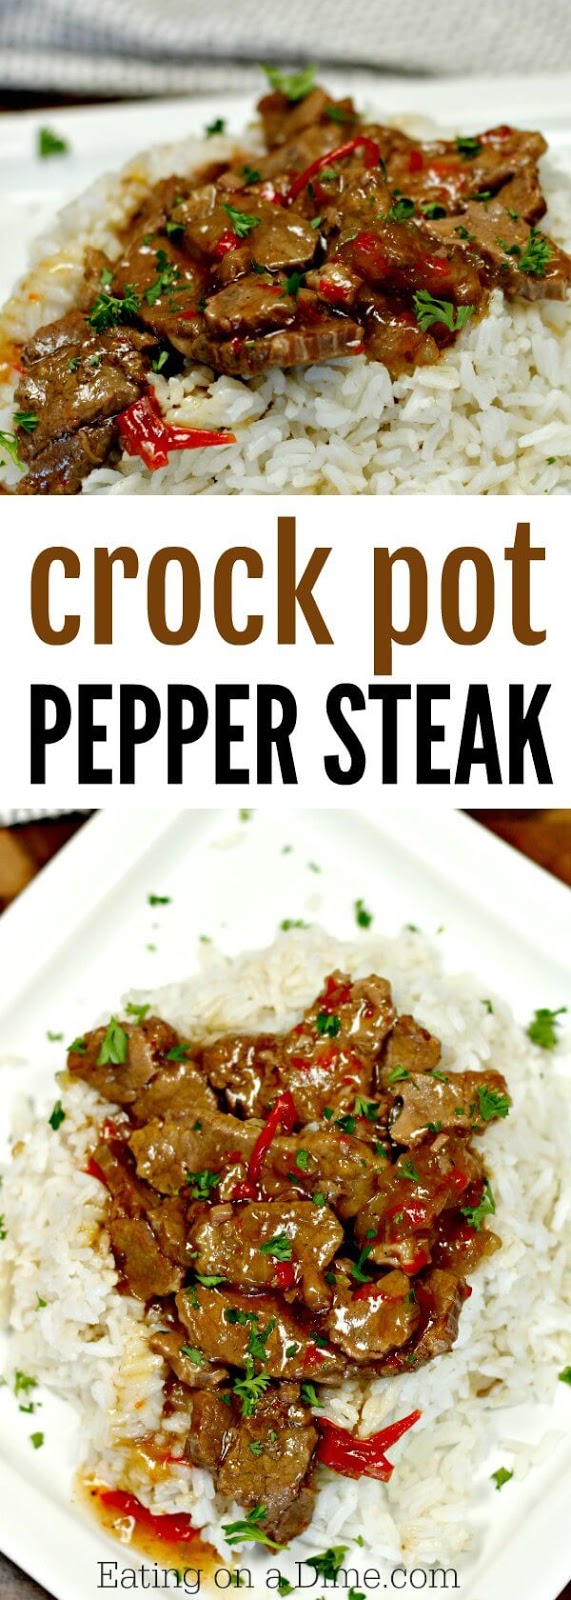 Best Crockpot Pepper Steak Recipe